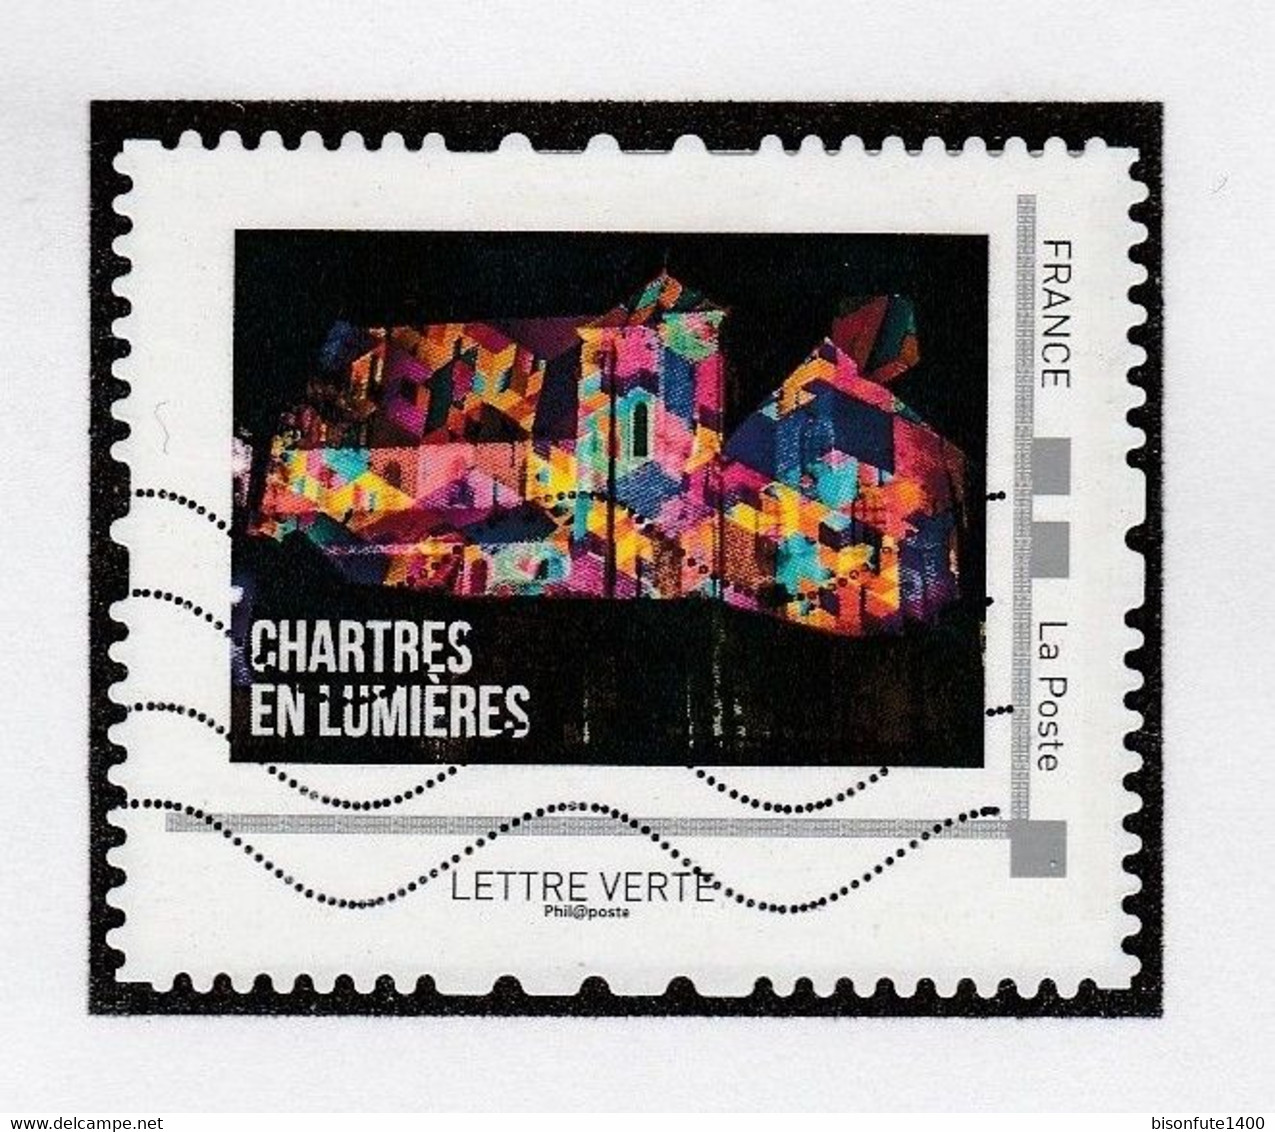 Série complète Collector 2016 : Chartres en Lumière, vendue avec sa feuille de présent. (*) ( Voir photos ).